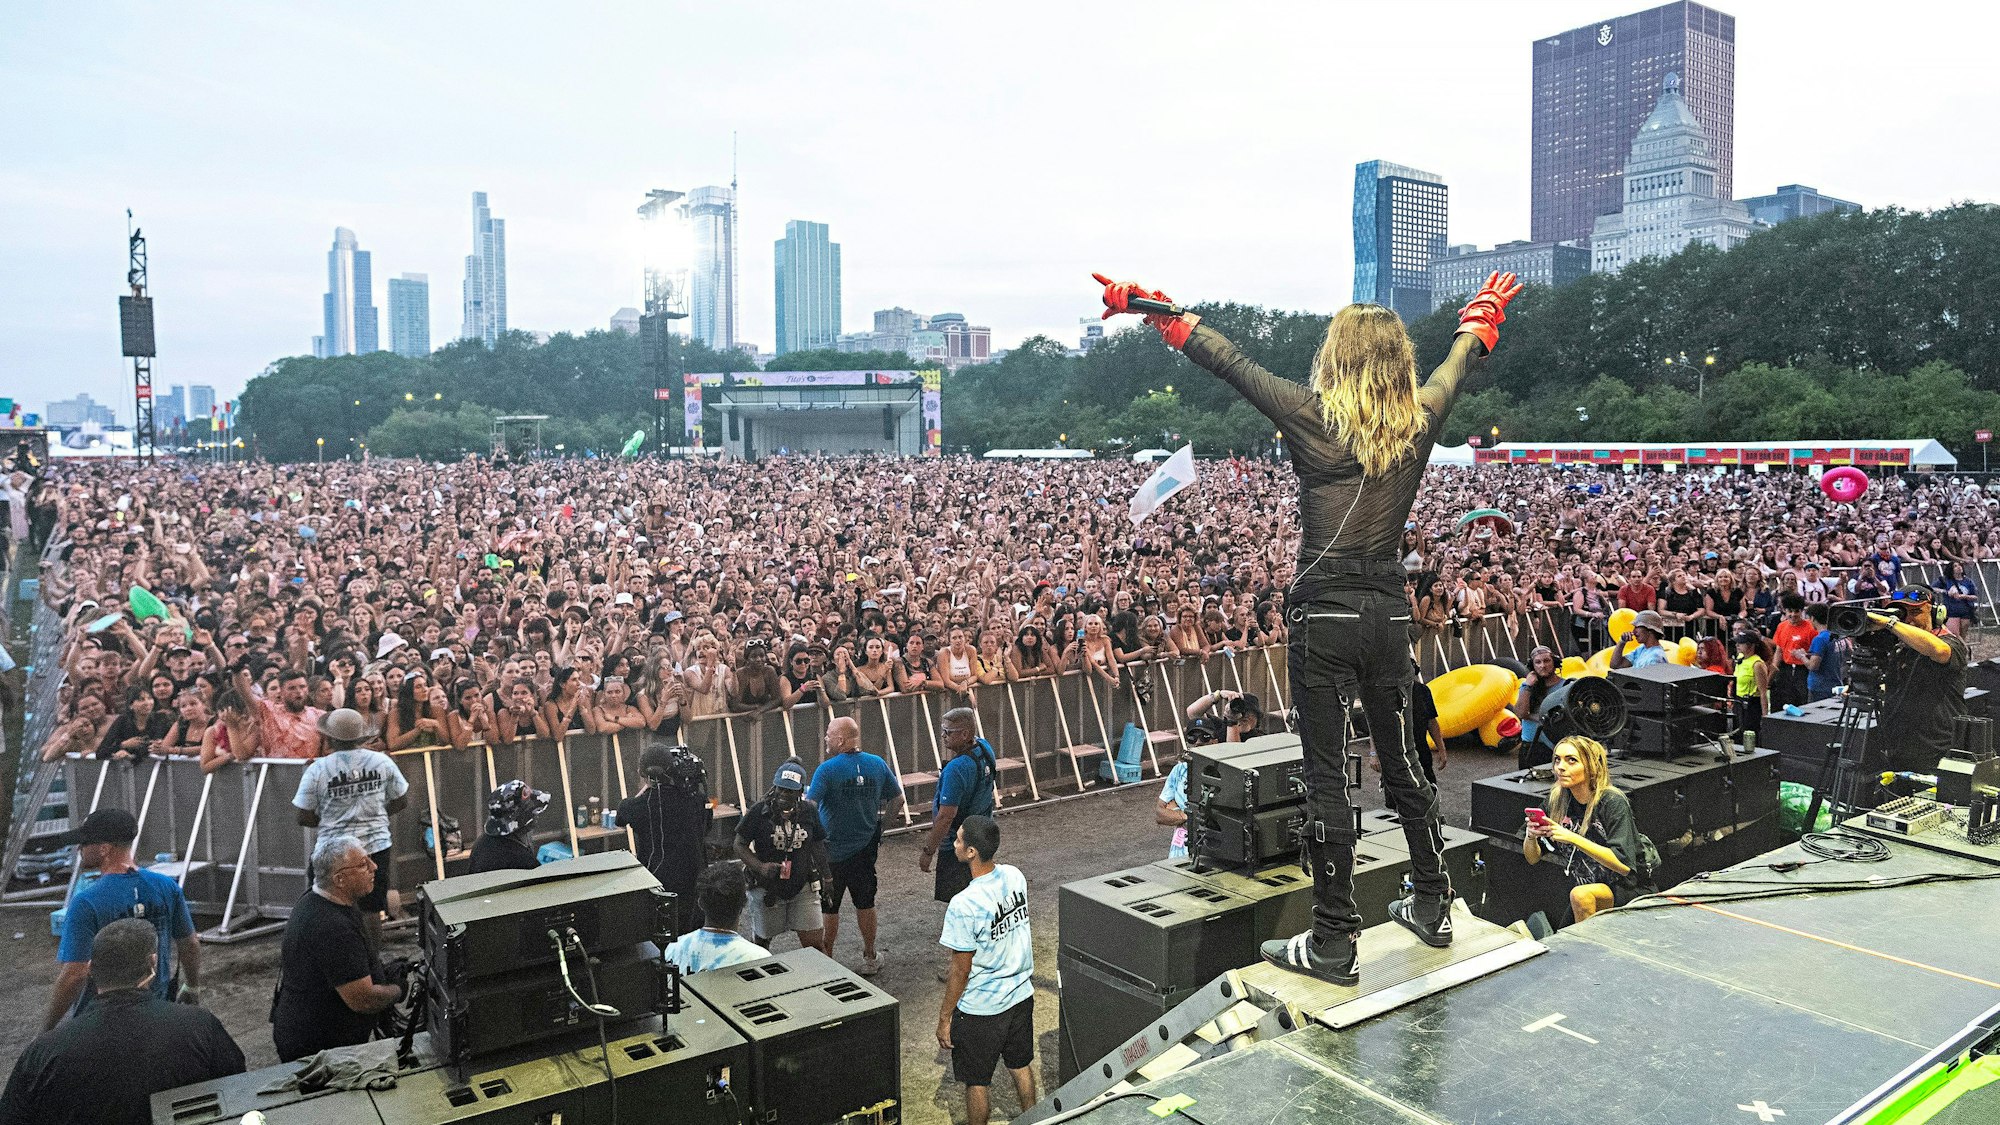 Jared Leto steht mit blonden langen Haaren vor einem großen Open-Air-Publikum und lässt sich feiern.